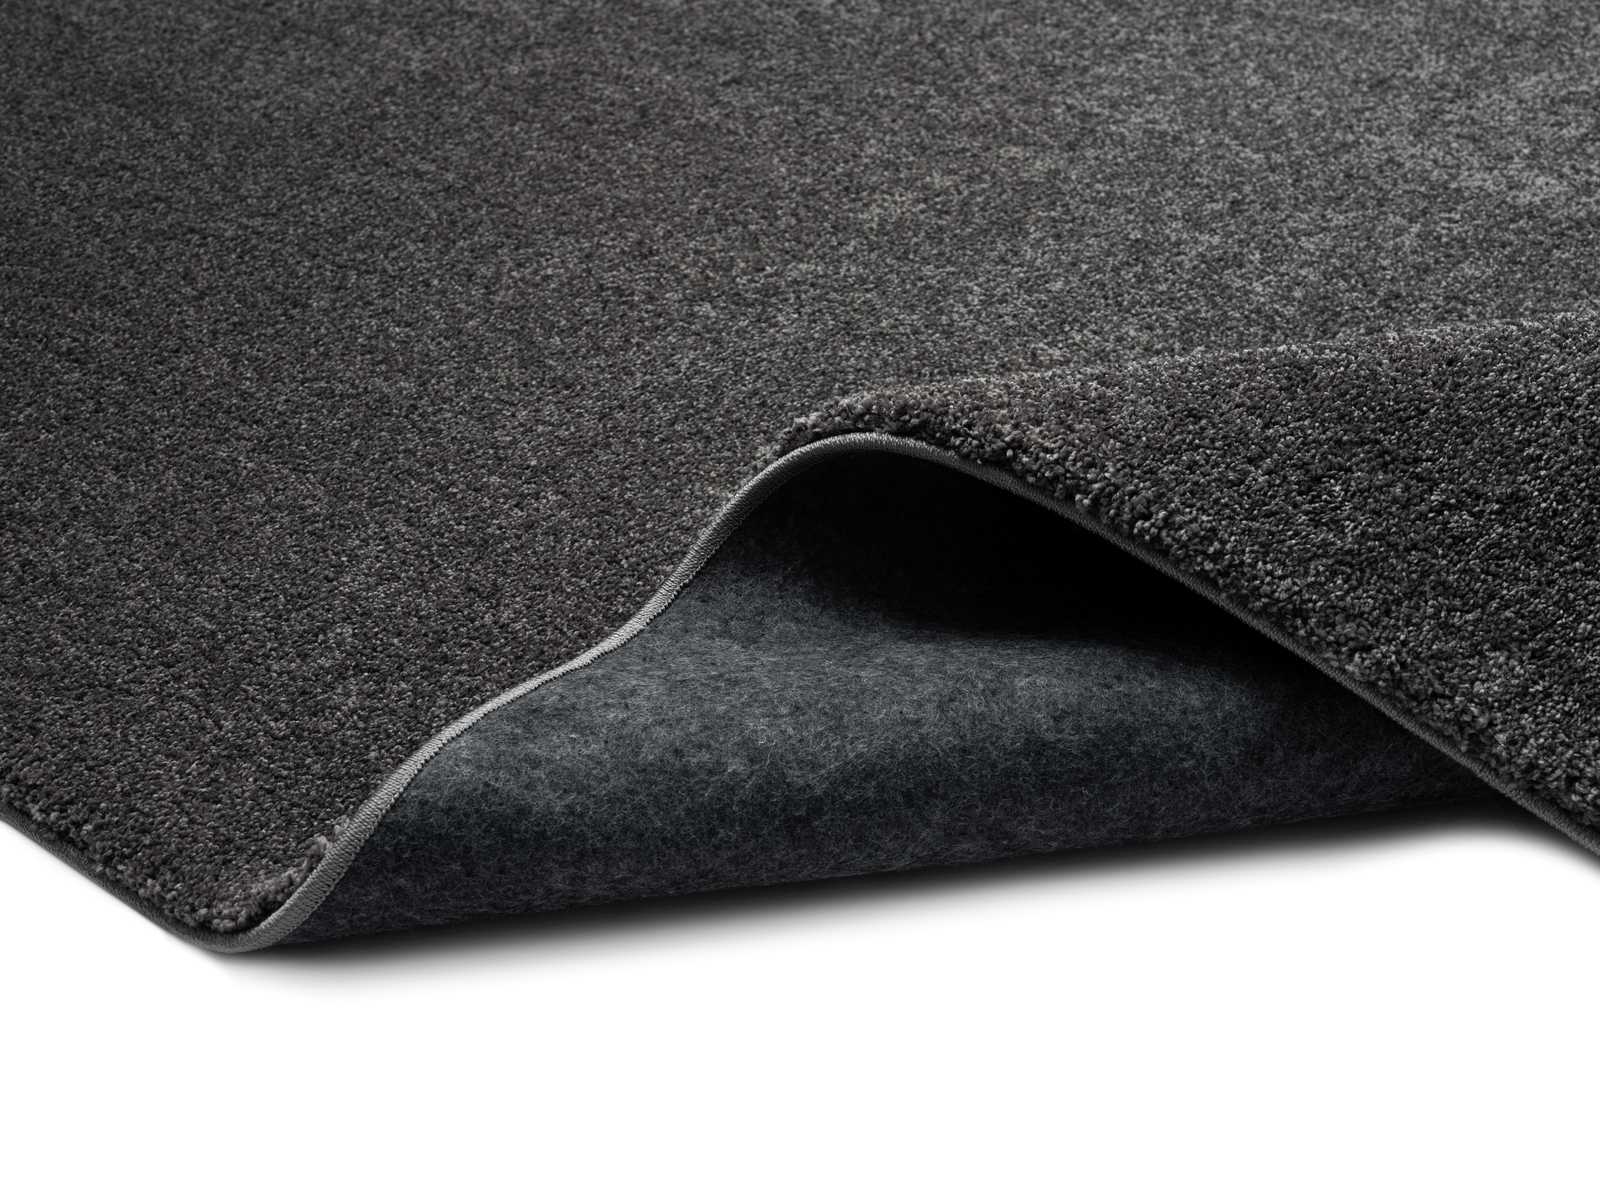             Soft short pile carpet in anthracite - 170 x 120 cm
        